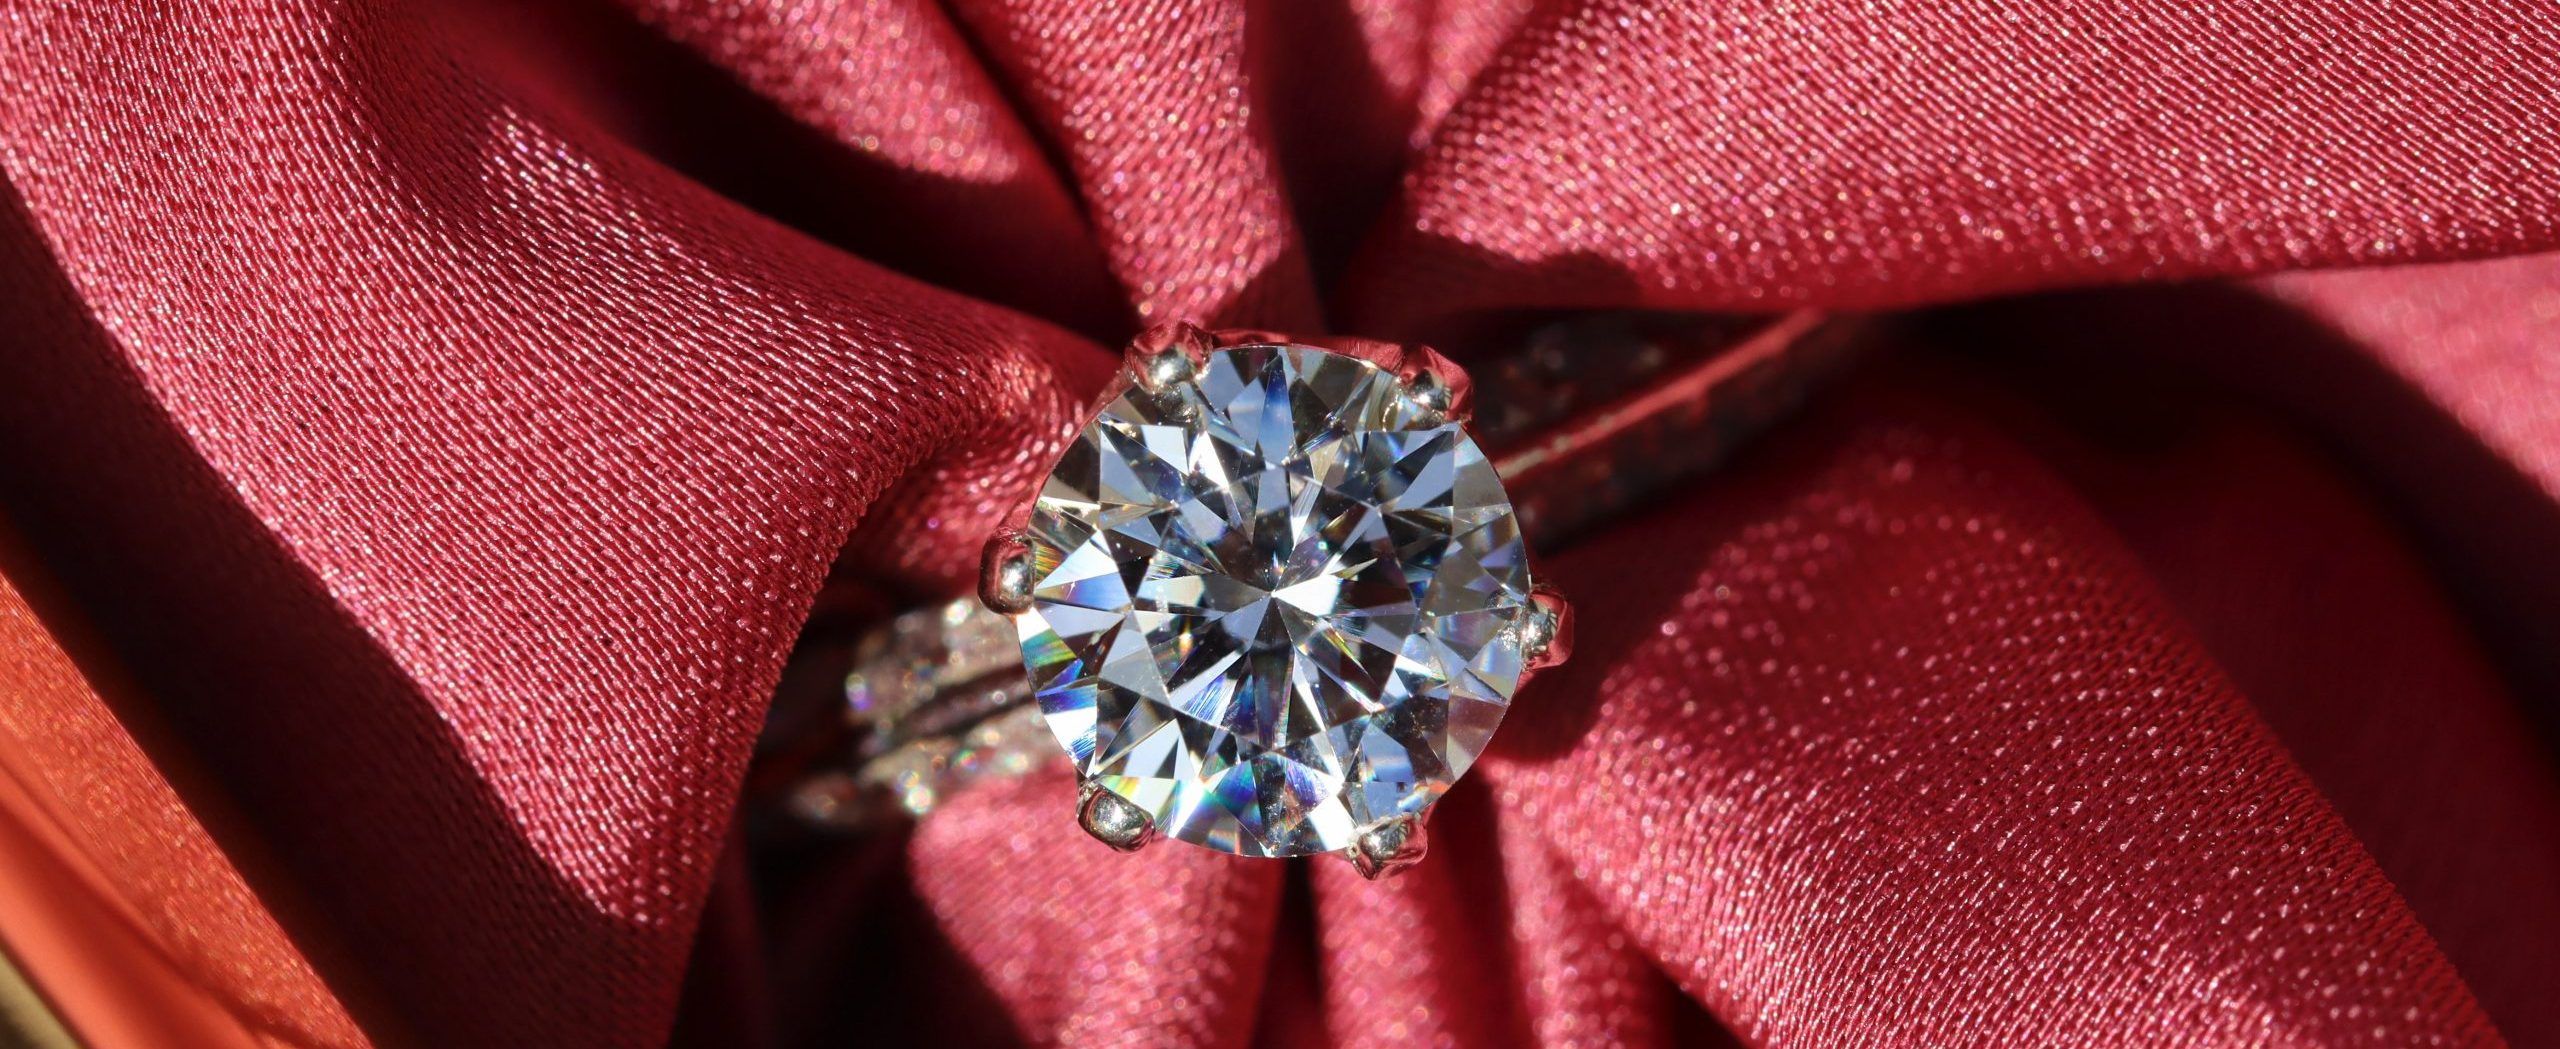 Diamond Ring by Sabrianna